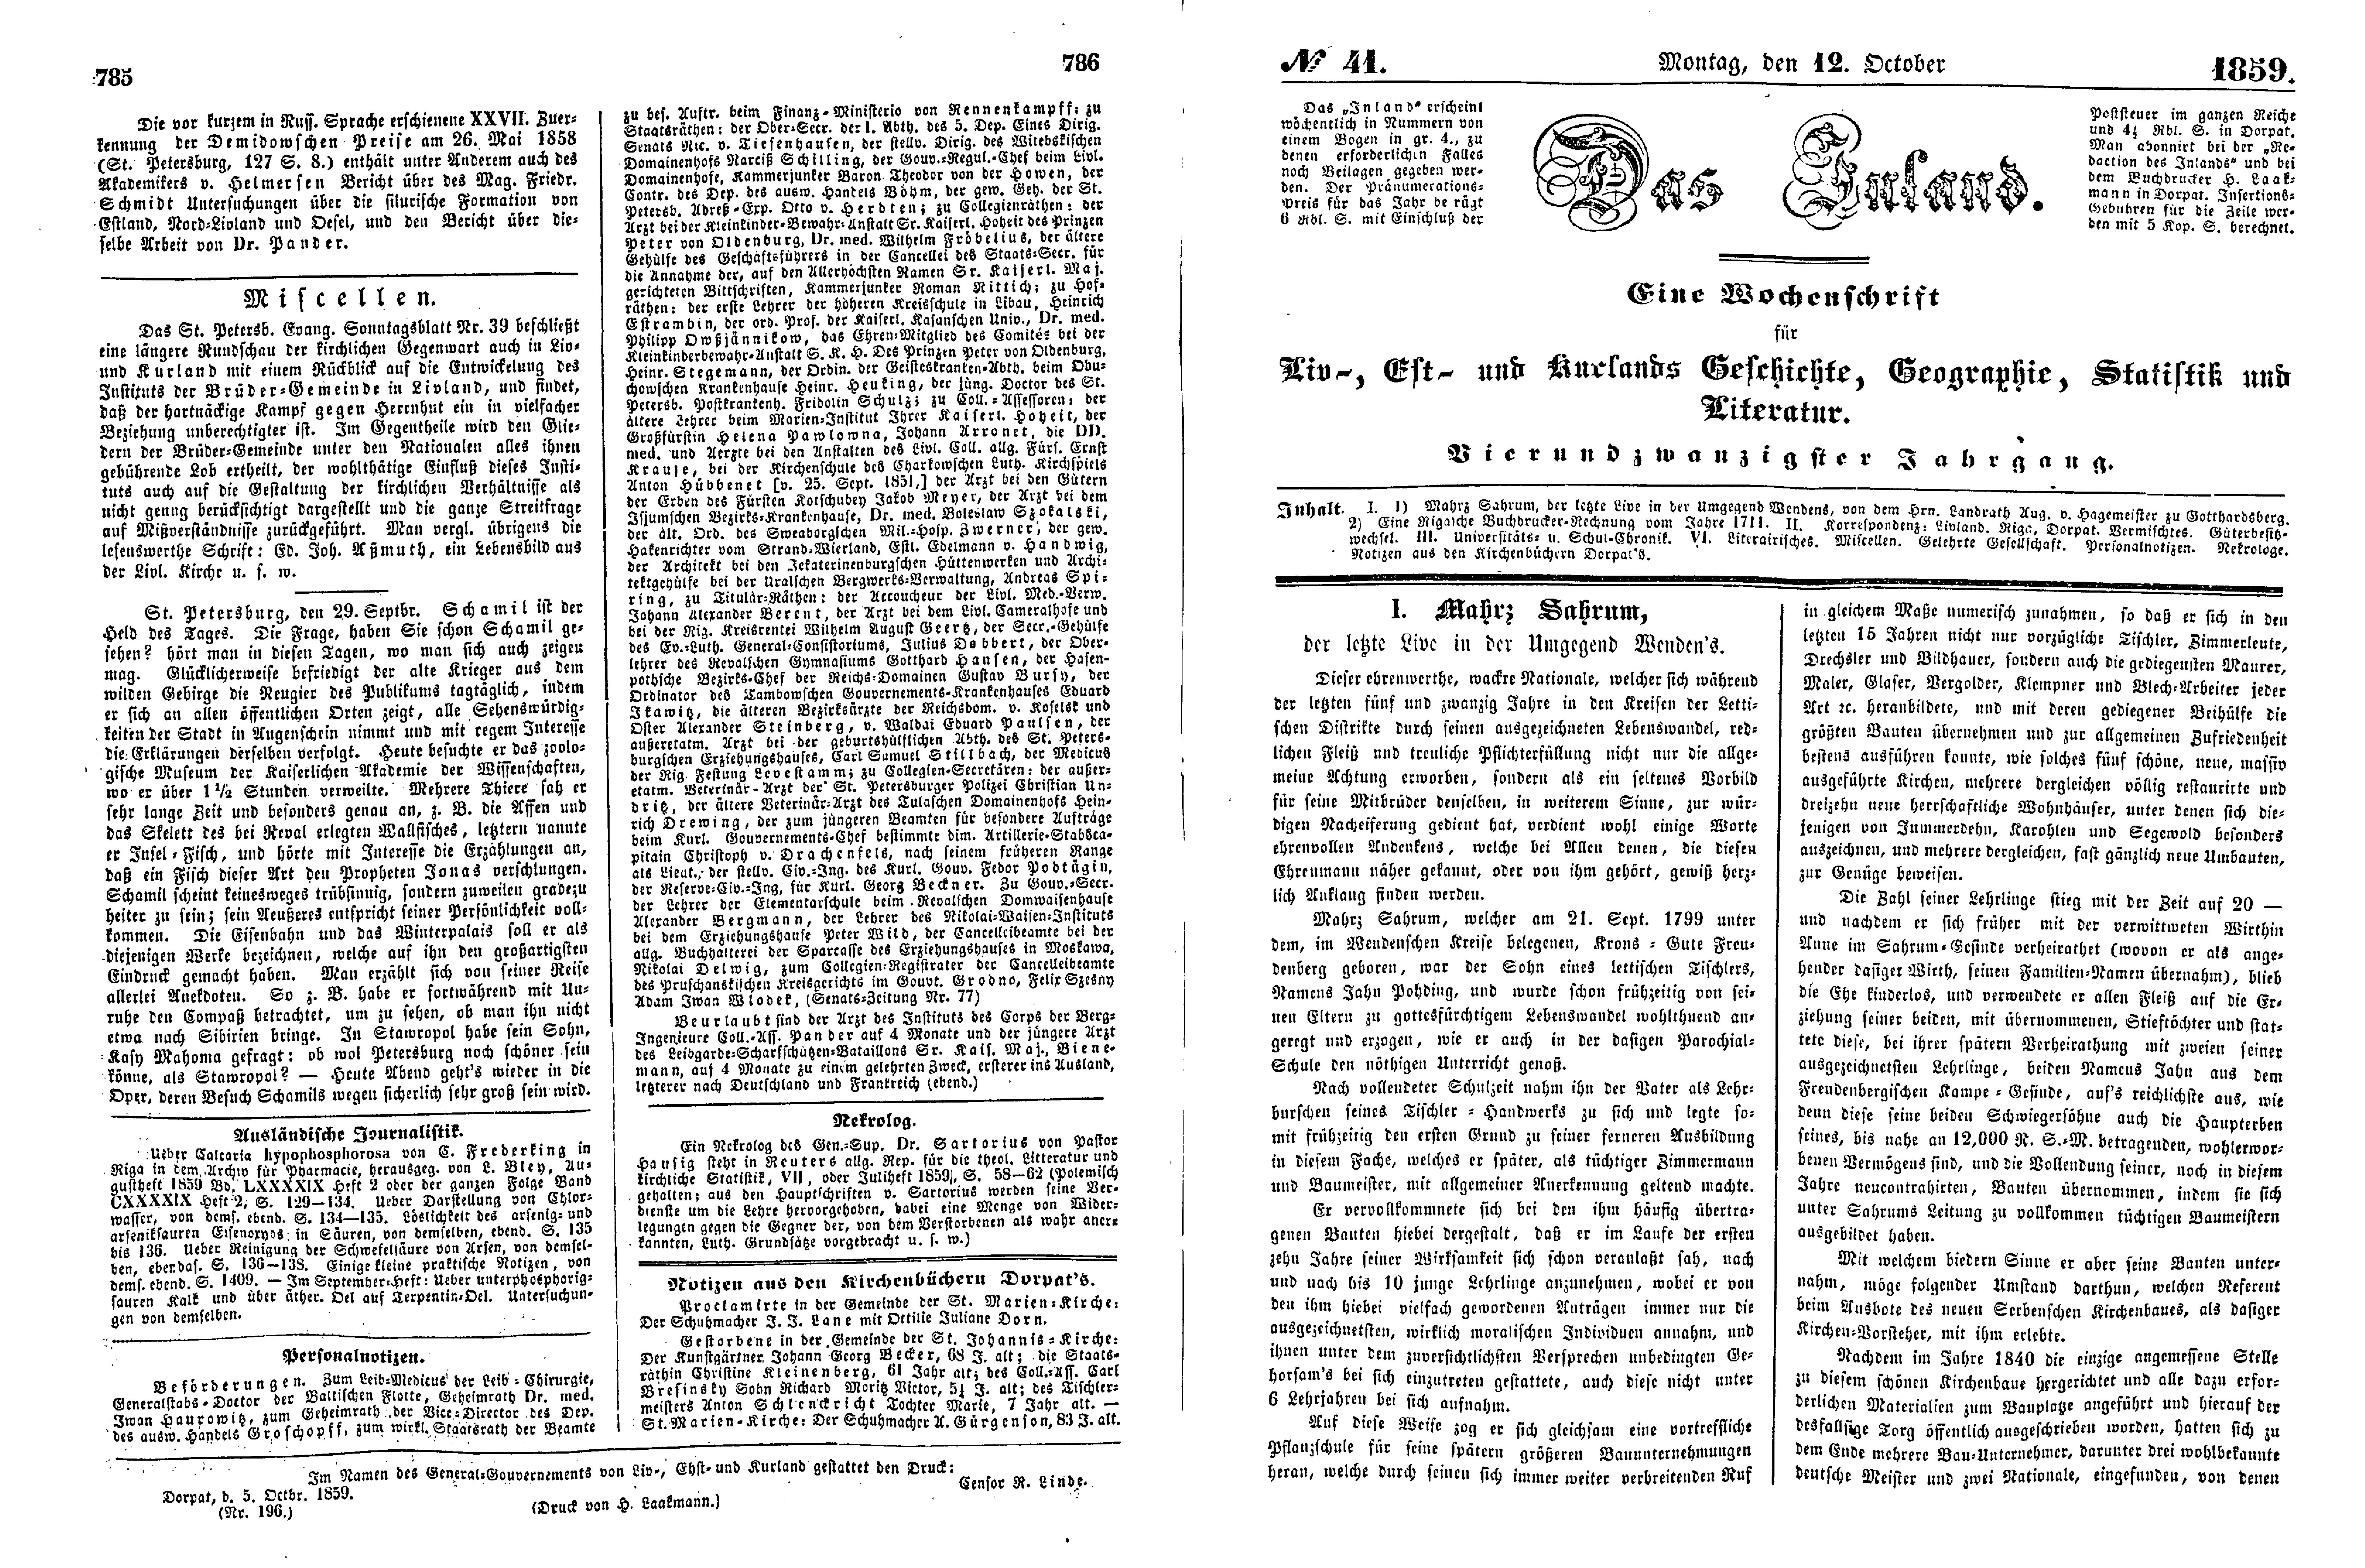 Mahrs Sahrum, der letzte Live in der Umgegend Wenden's (1859) | 1. (785-788) Main body of text